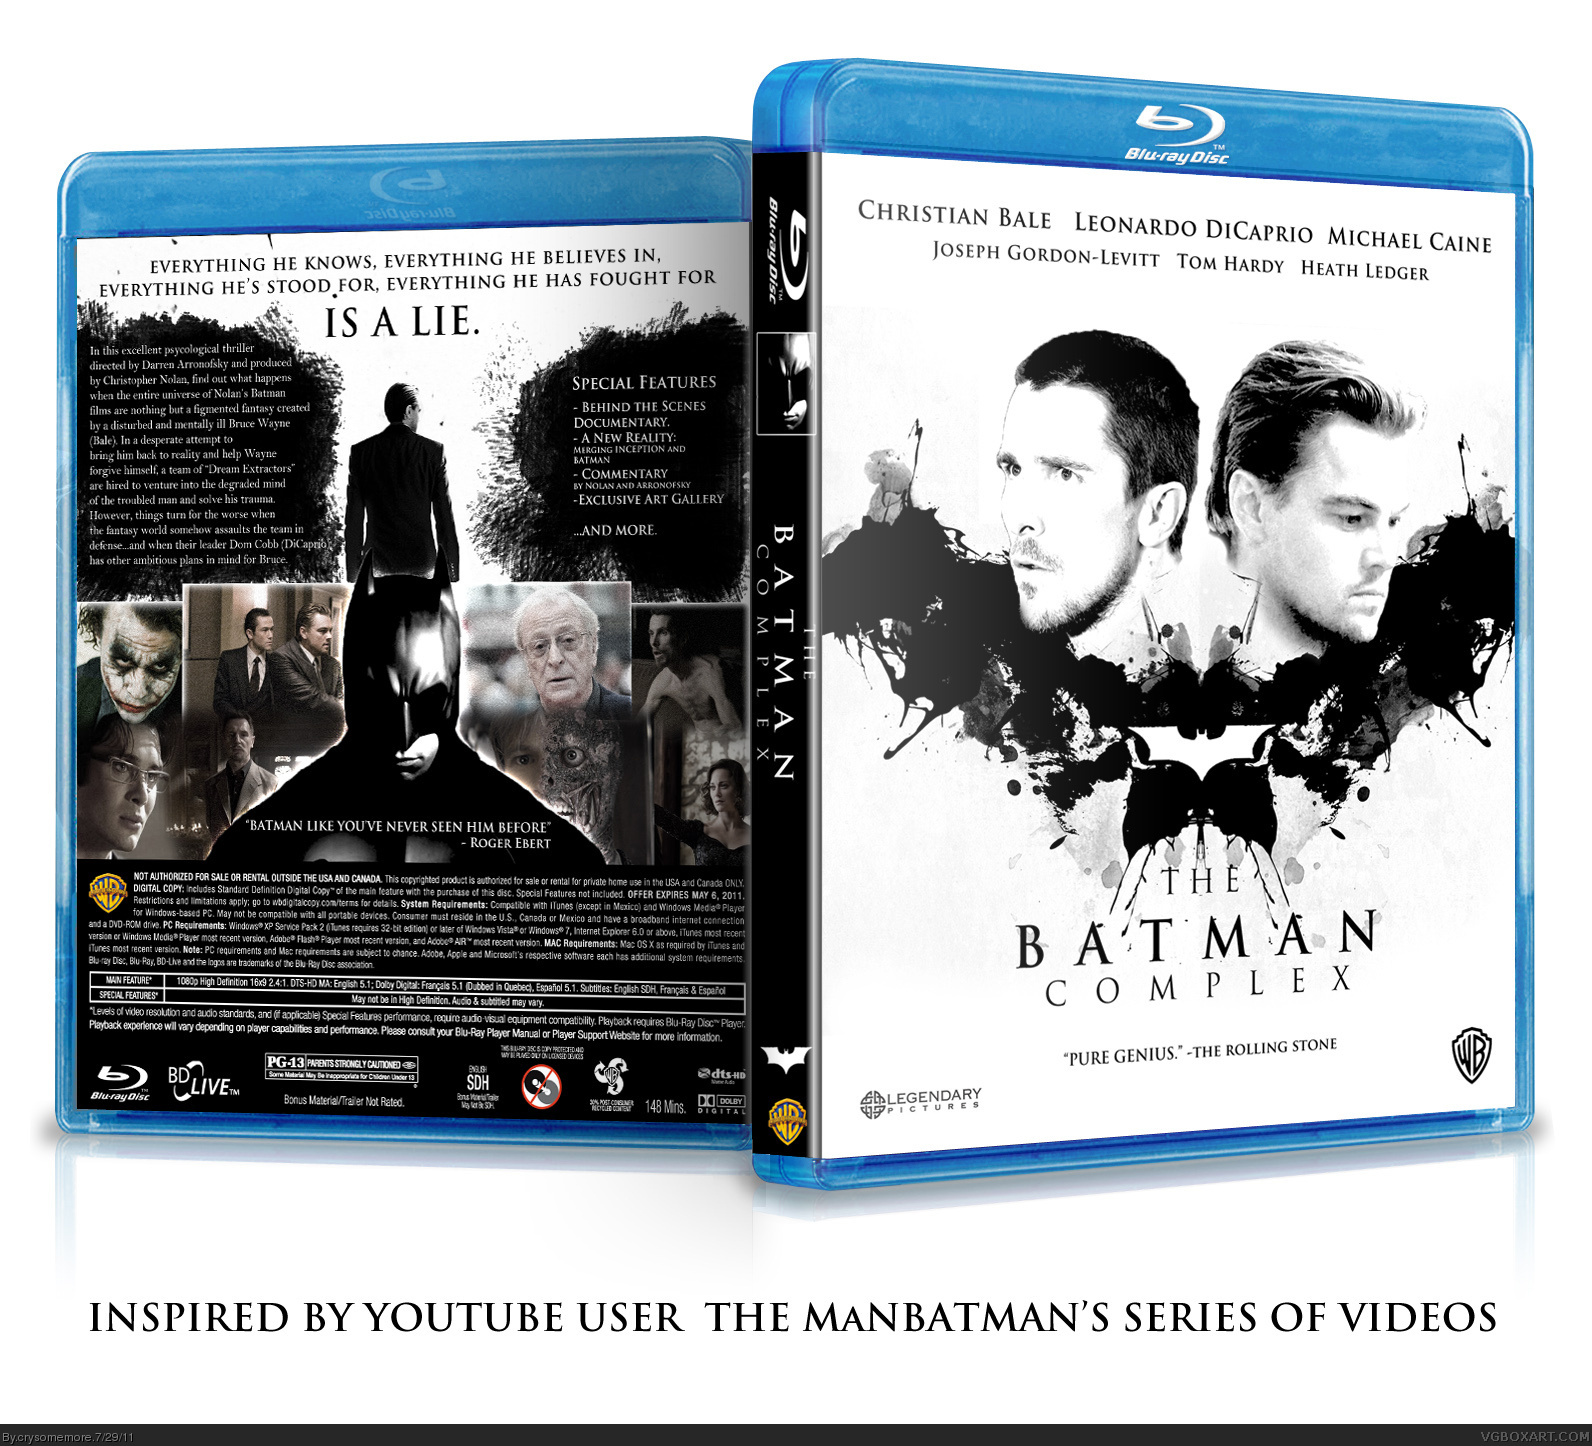 The Batman Complex box cover